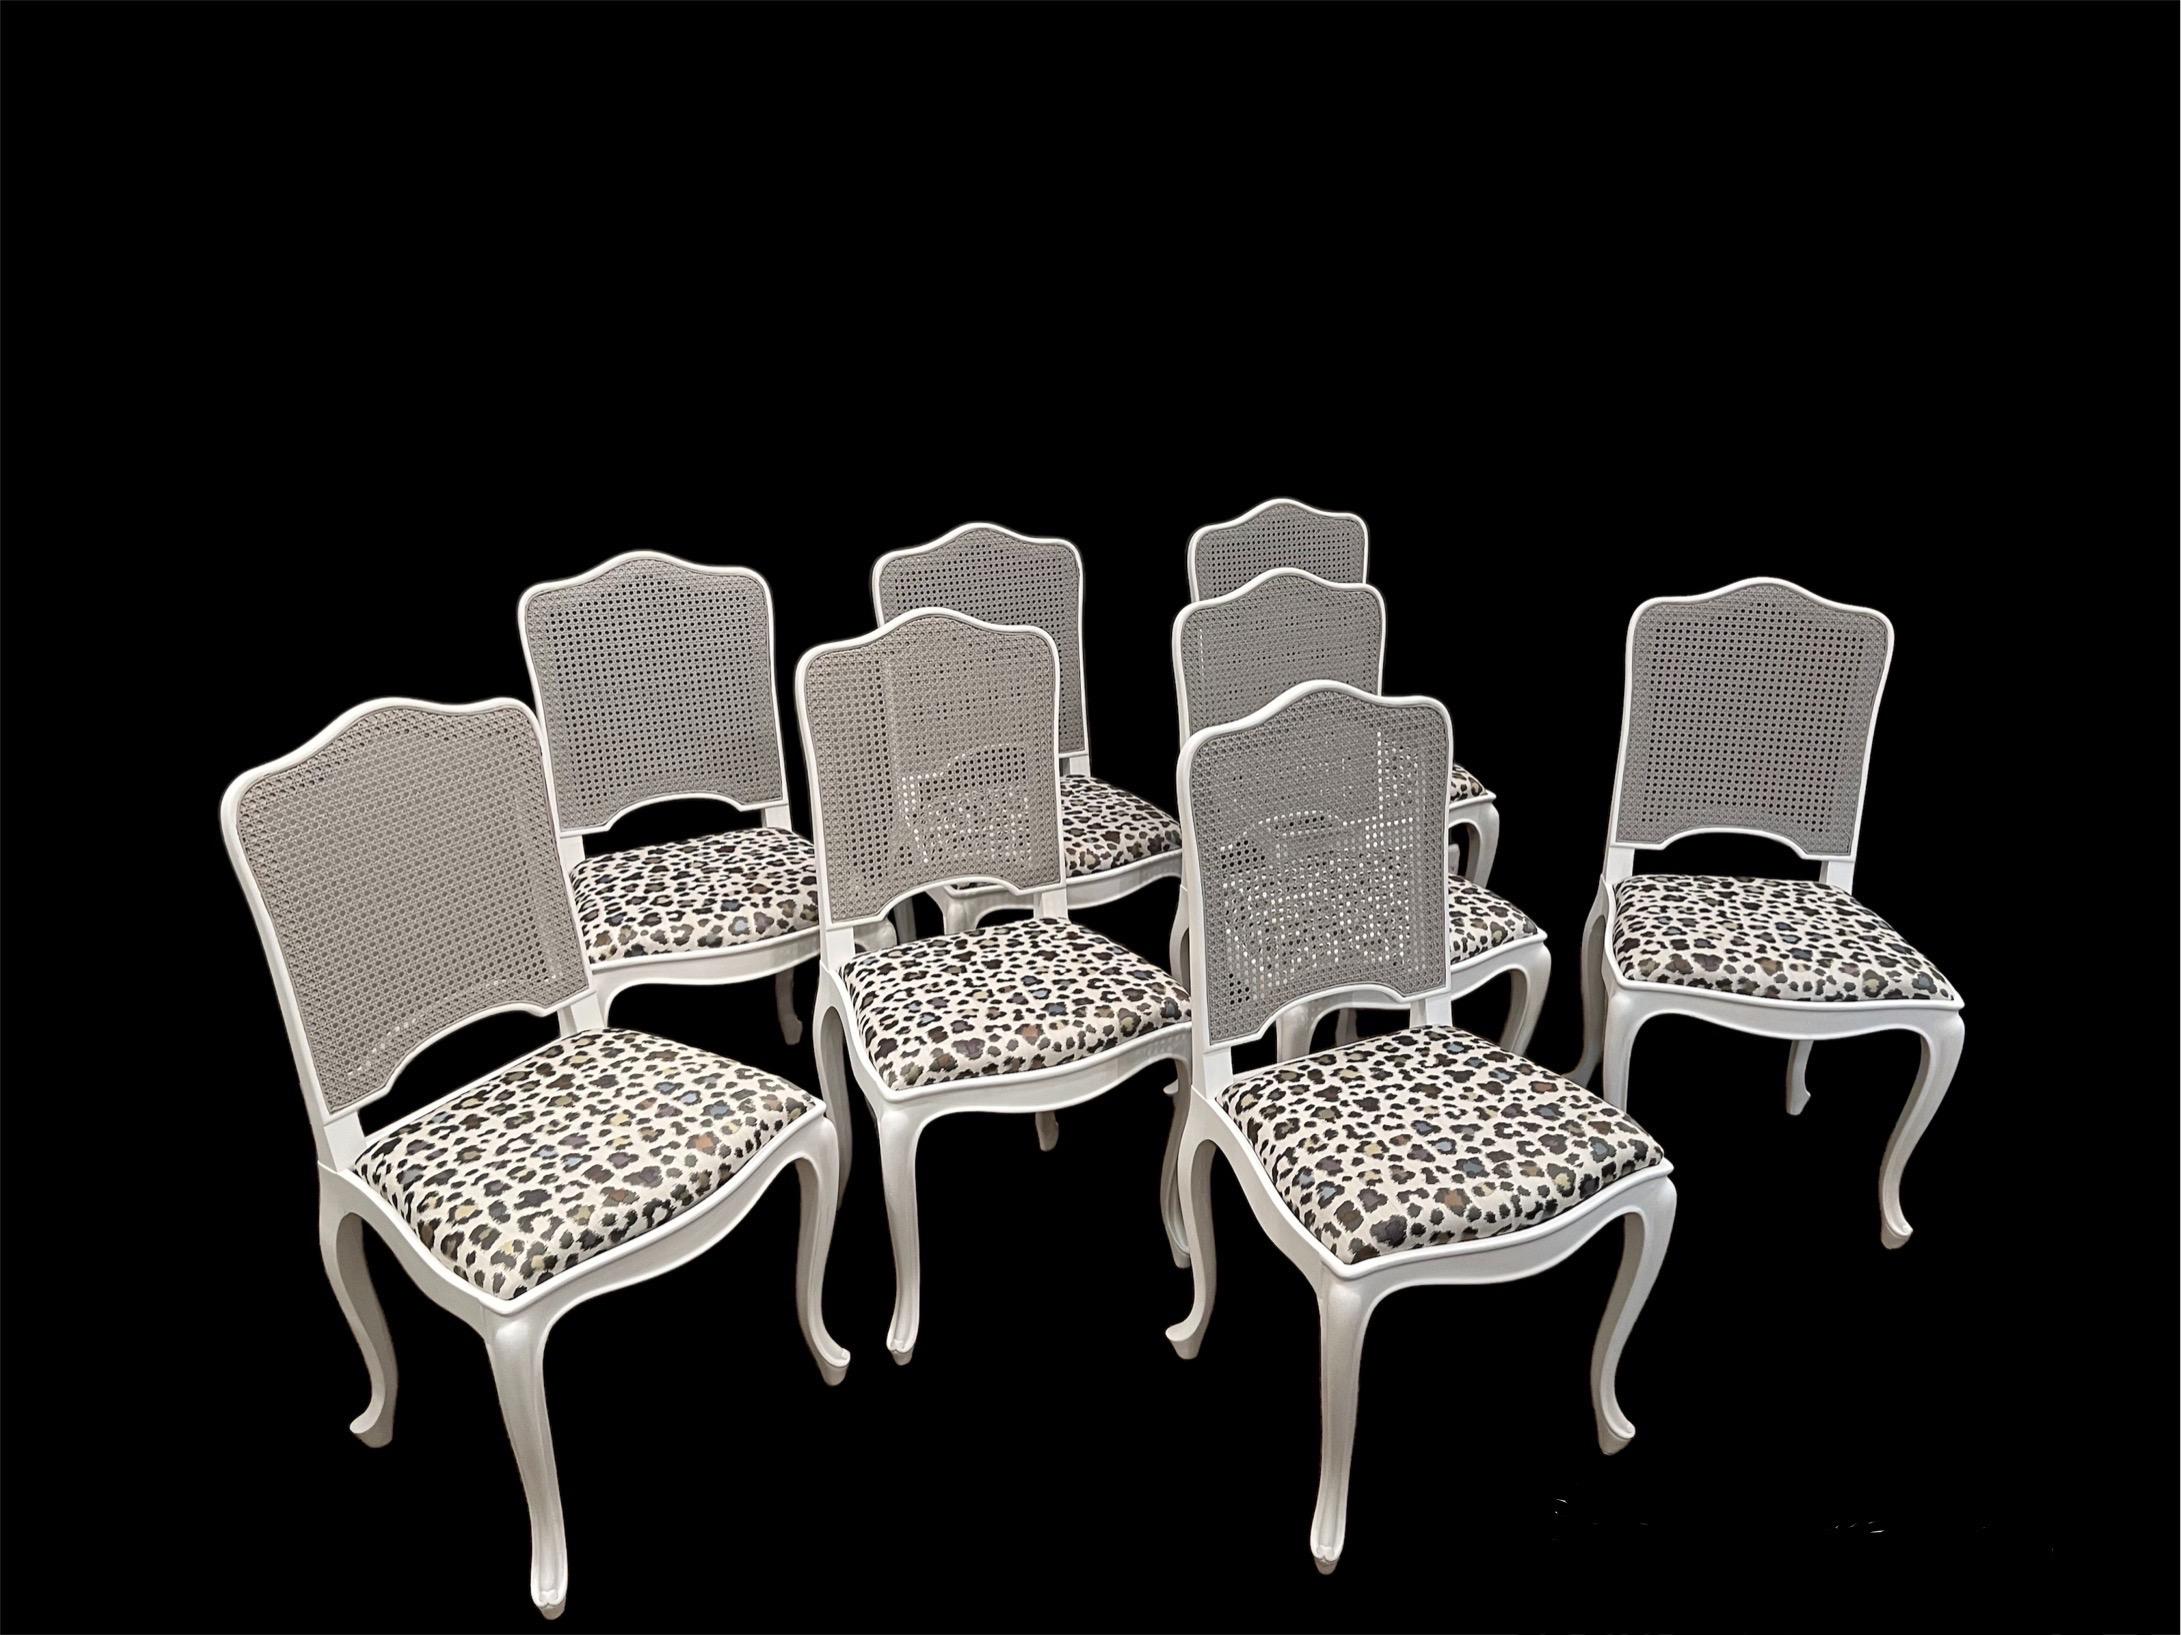 Huit chaises de salle à manger de style Louis XV à dossier en rotin et sièges en tissu. Les cadres des chaises sont finement peints en blanc mat et les dossiers sont peints dans un gris pâle doux. Les cadres des chaises sont serrés et les sièges ont